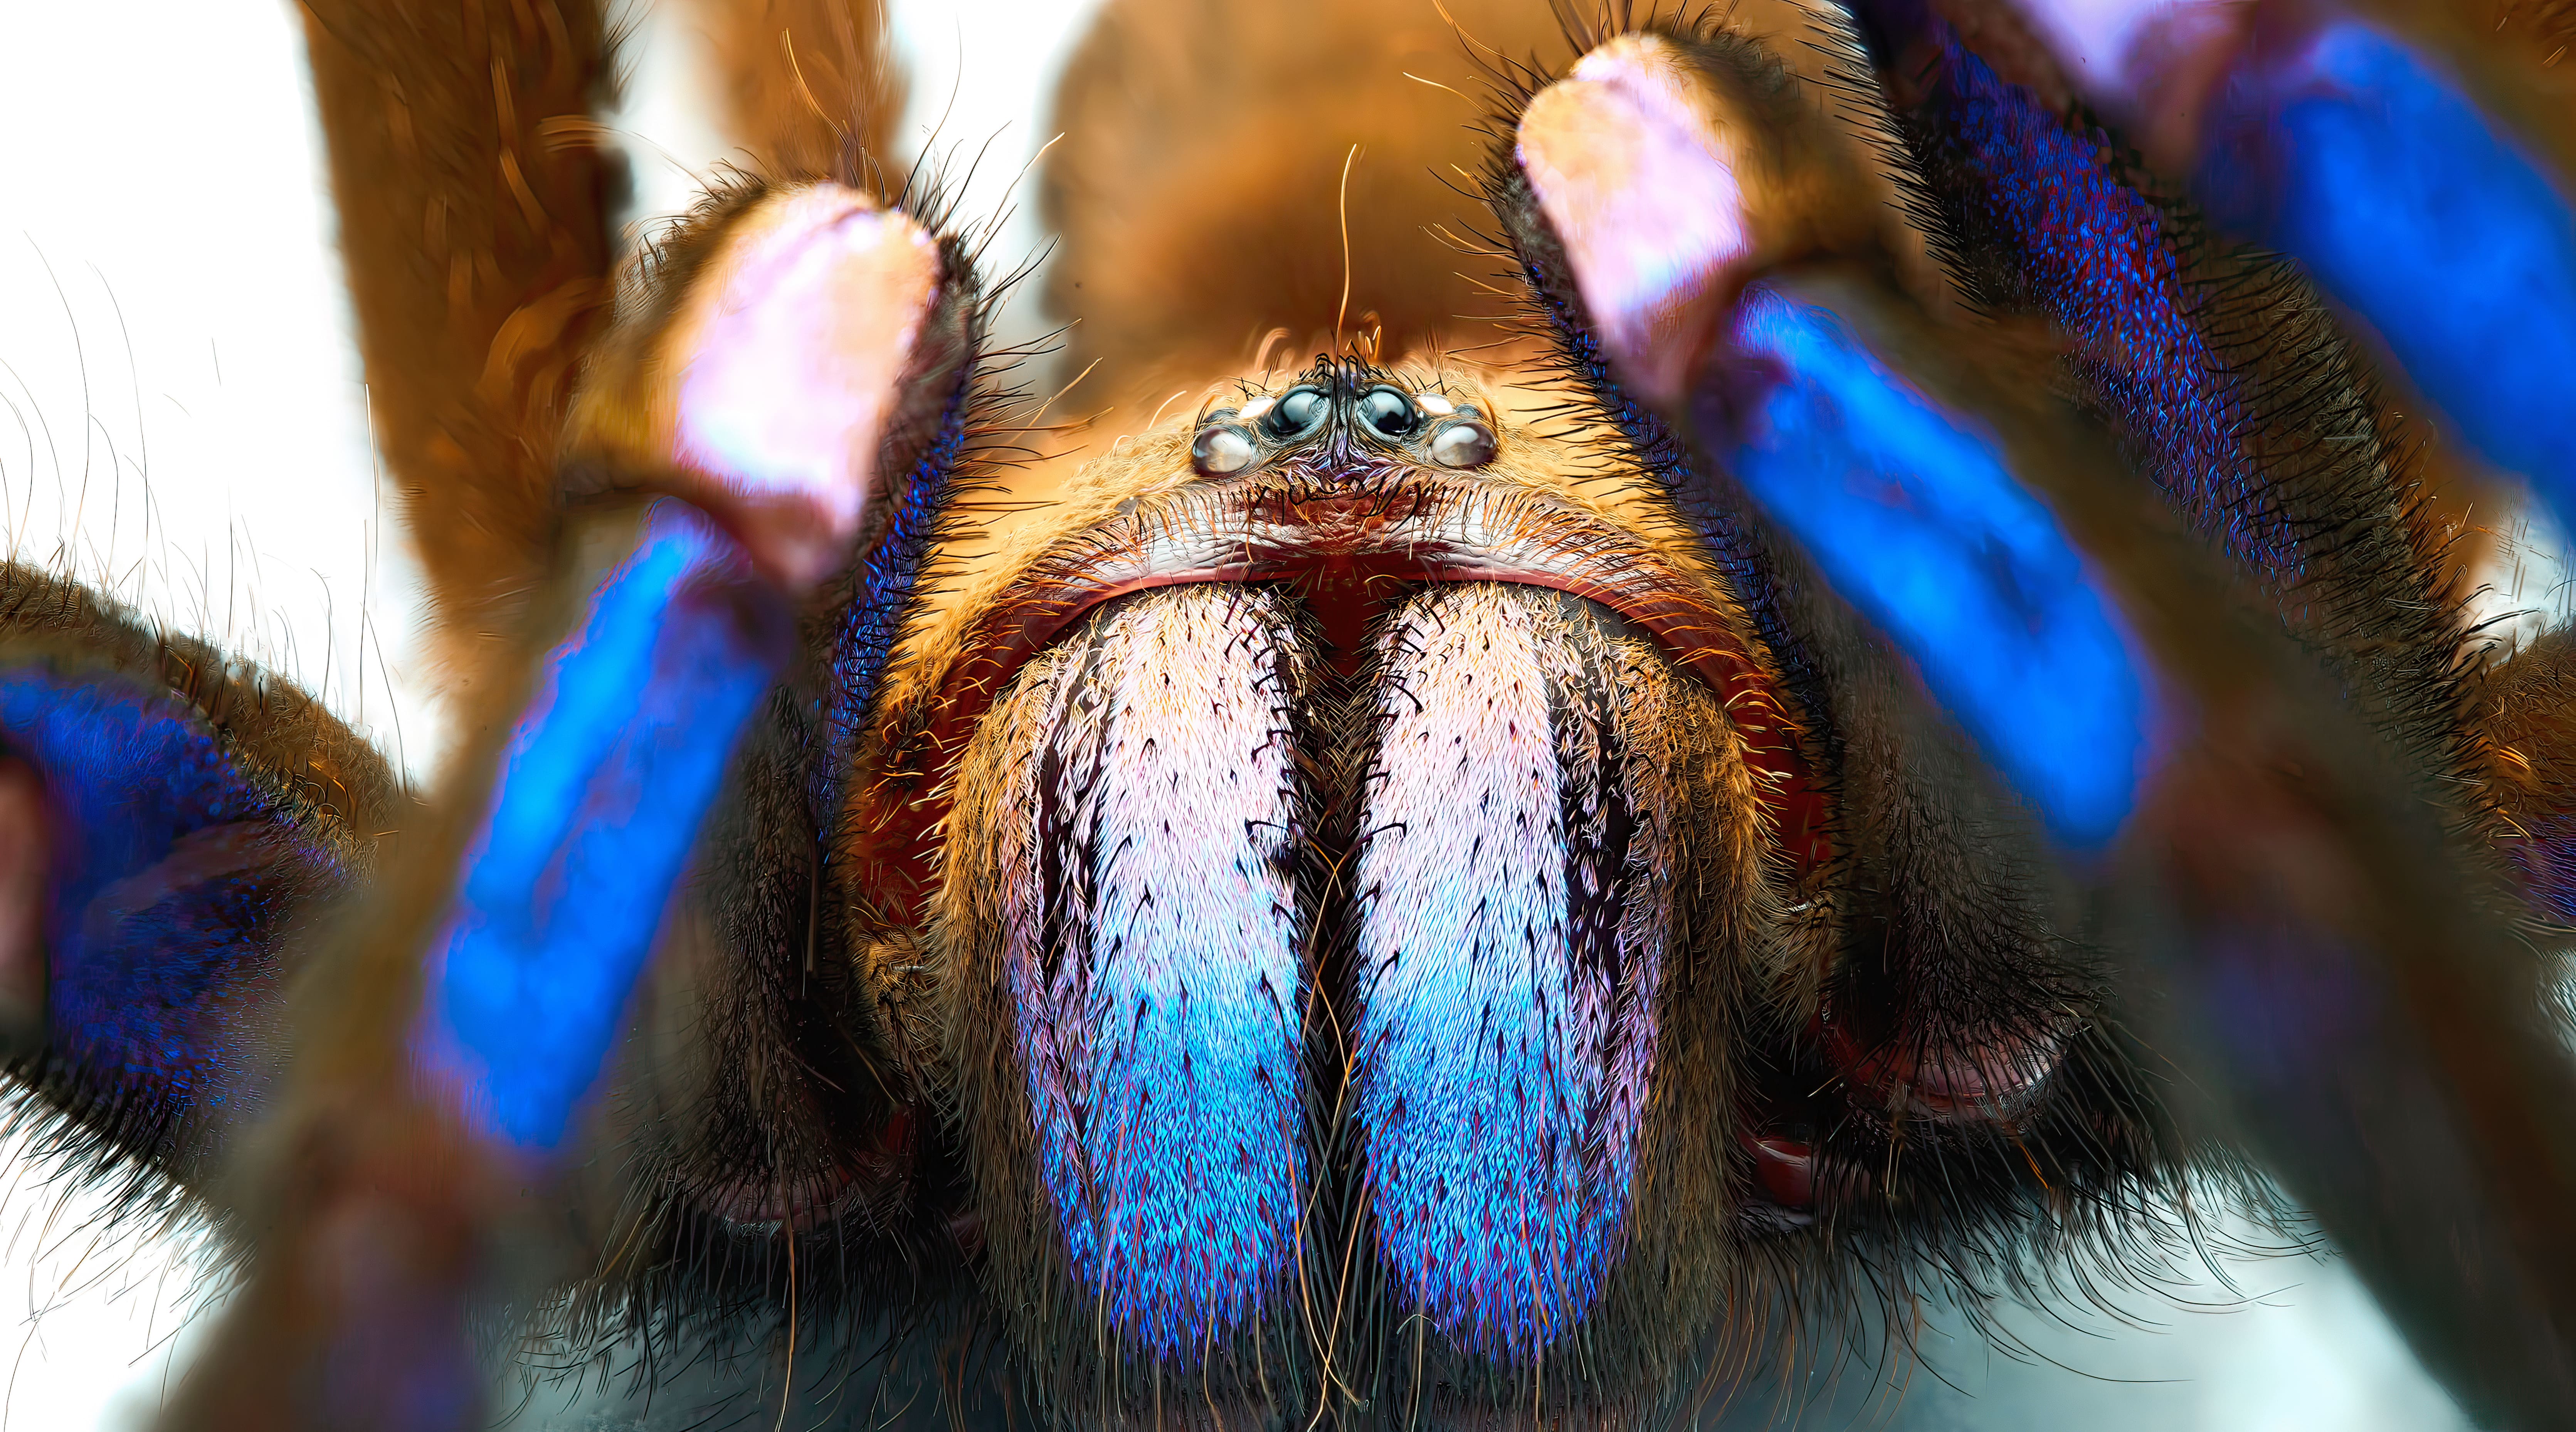 Le gros plan sur Chilobrachys natanicharum permet de s'apercevoir que ce sont ses soies (poils) qui lui donnent cette couleur bleue irisée. © Yuranan Nanthaisong